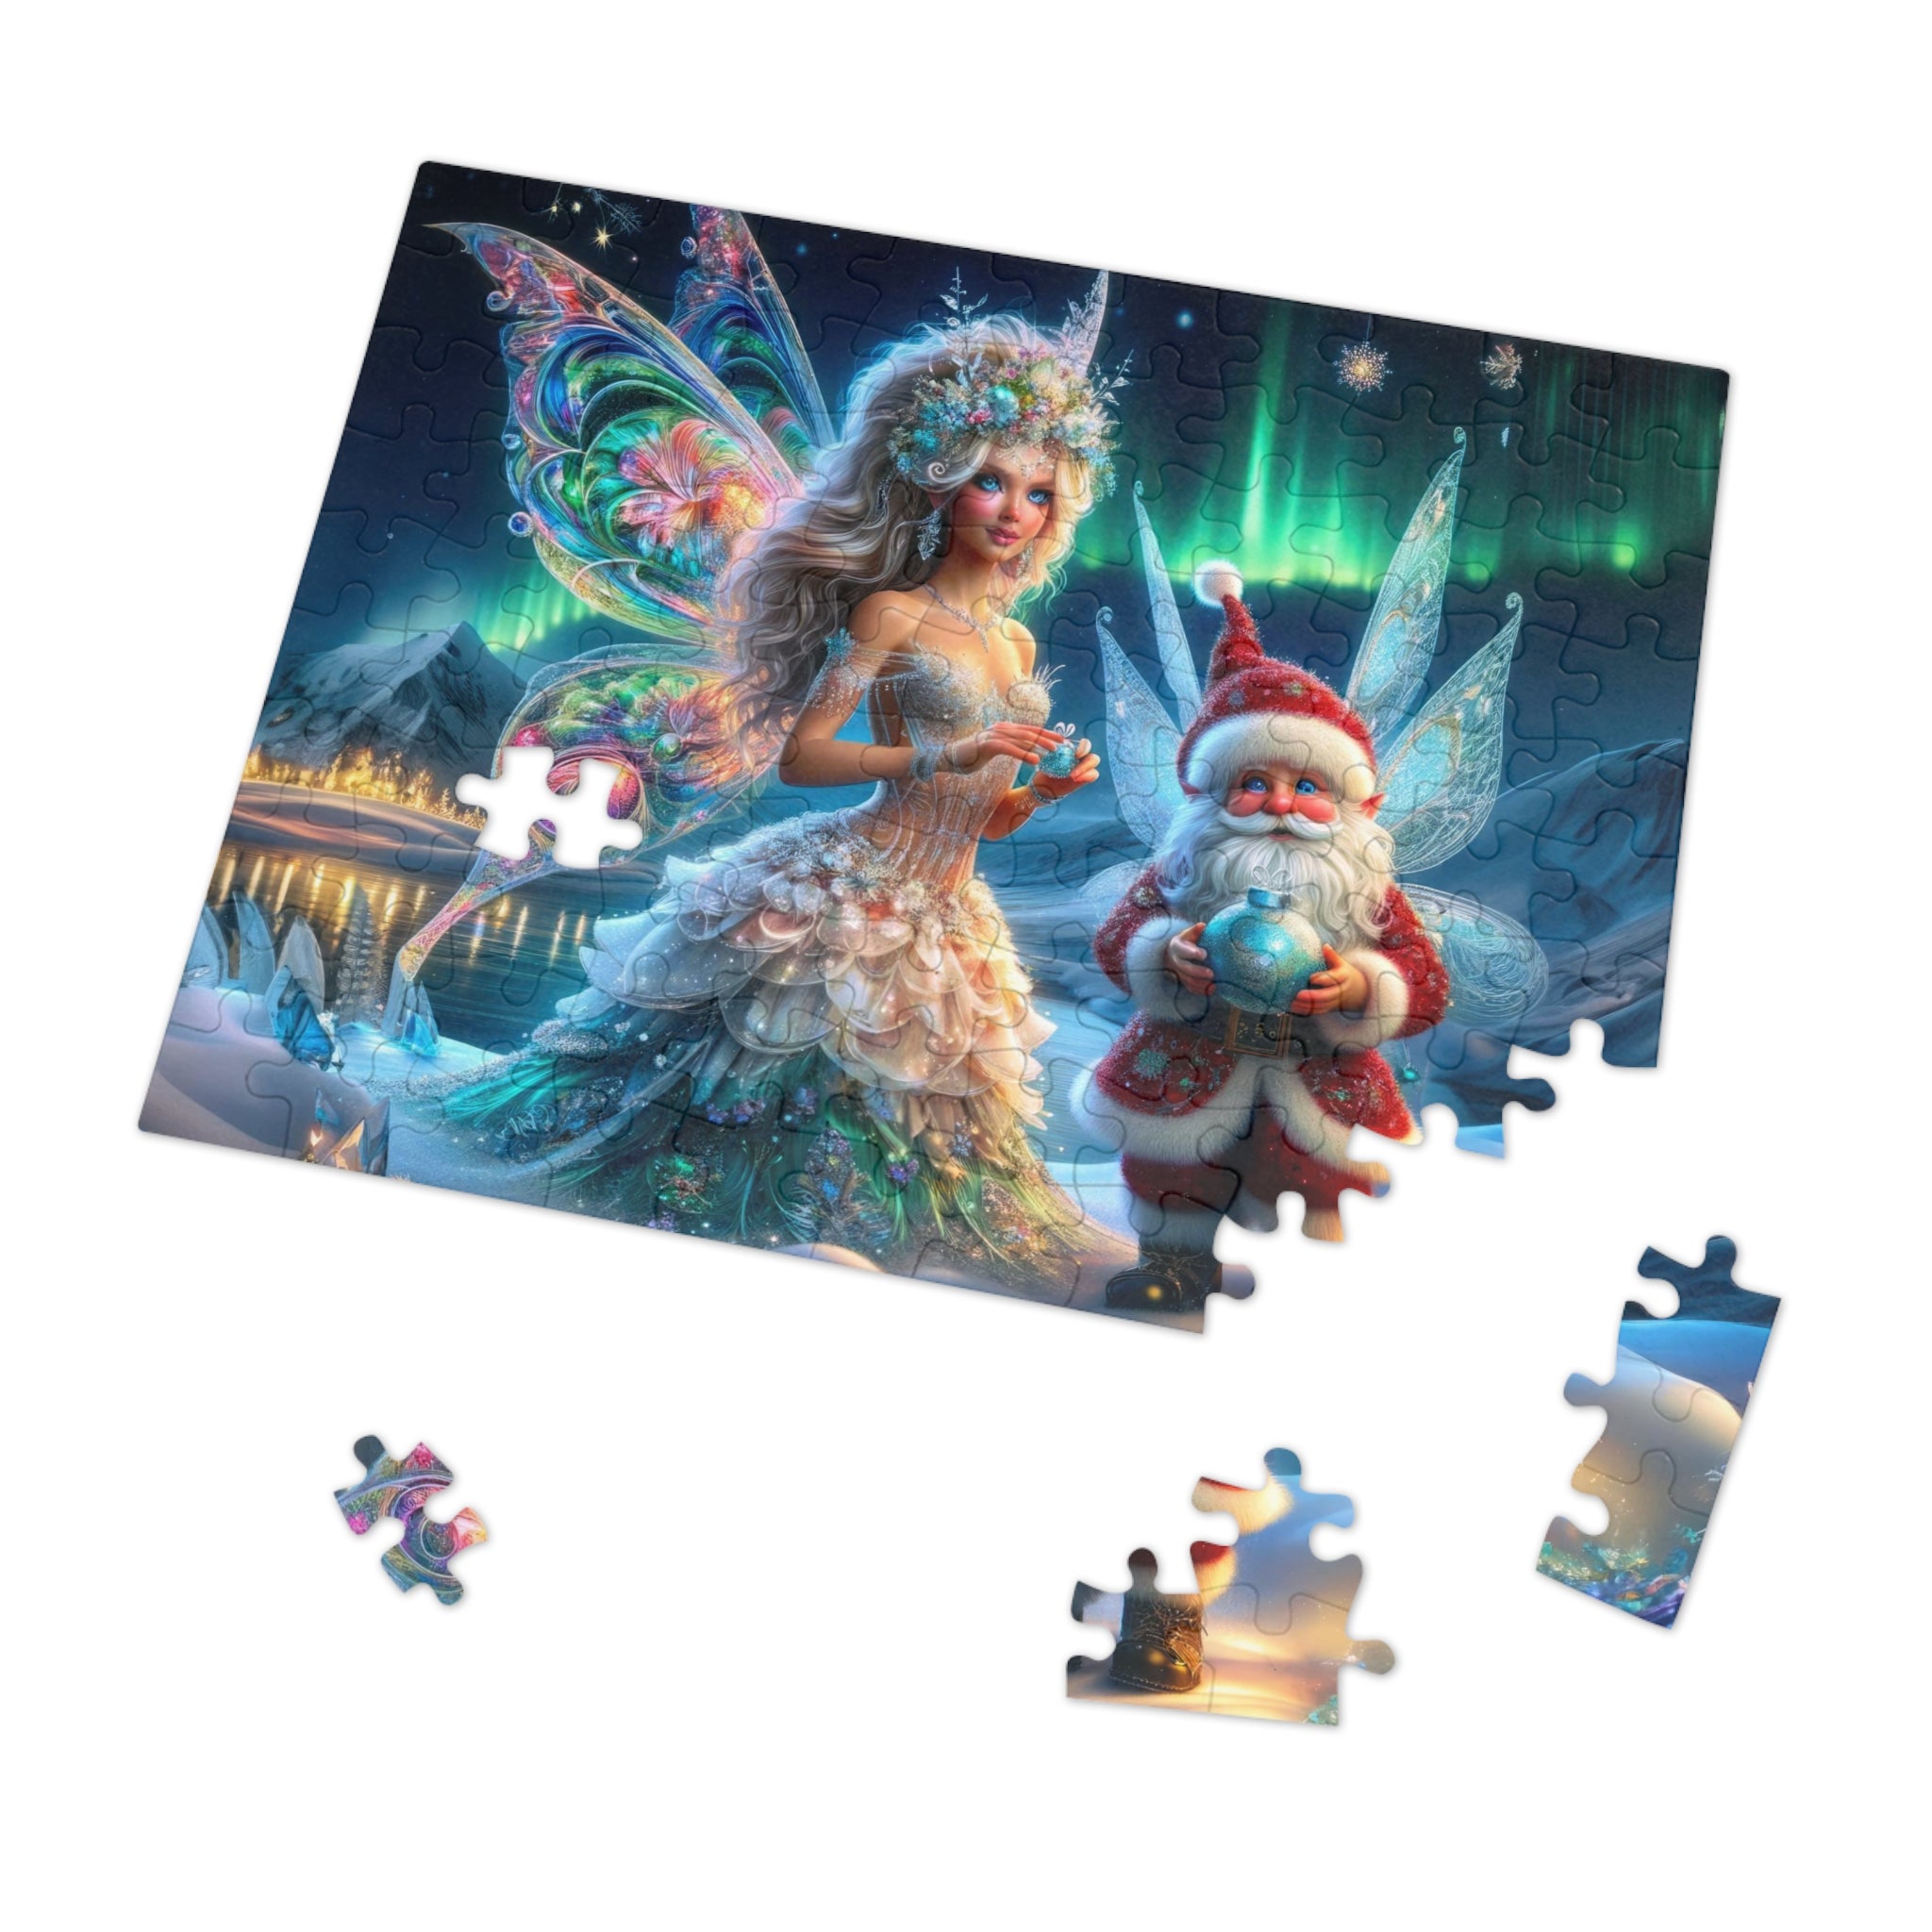 A Fairytale Christmas Jigsaw Puzzle